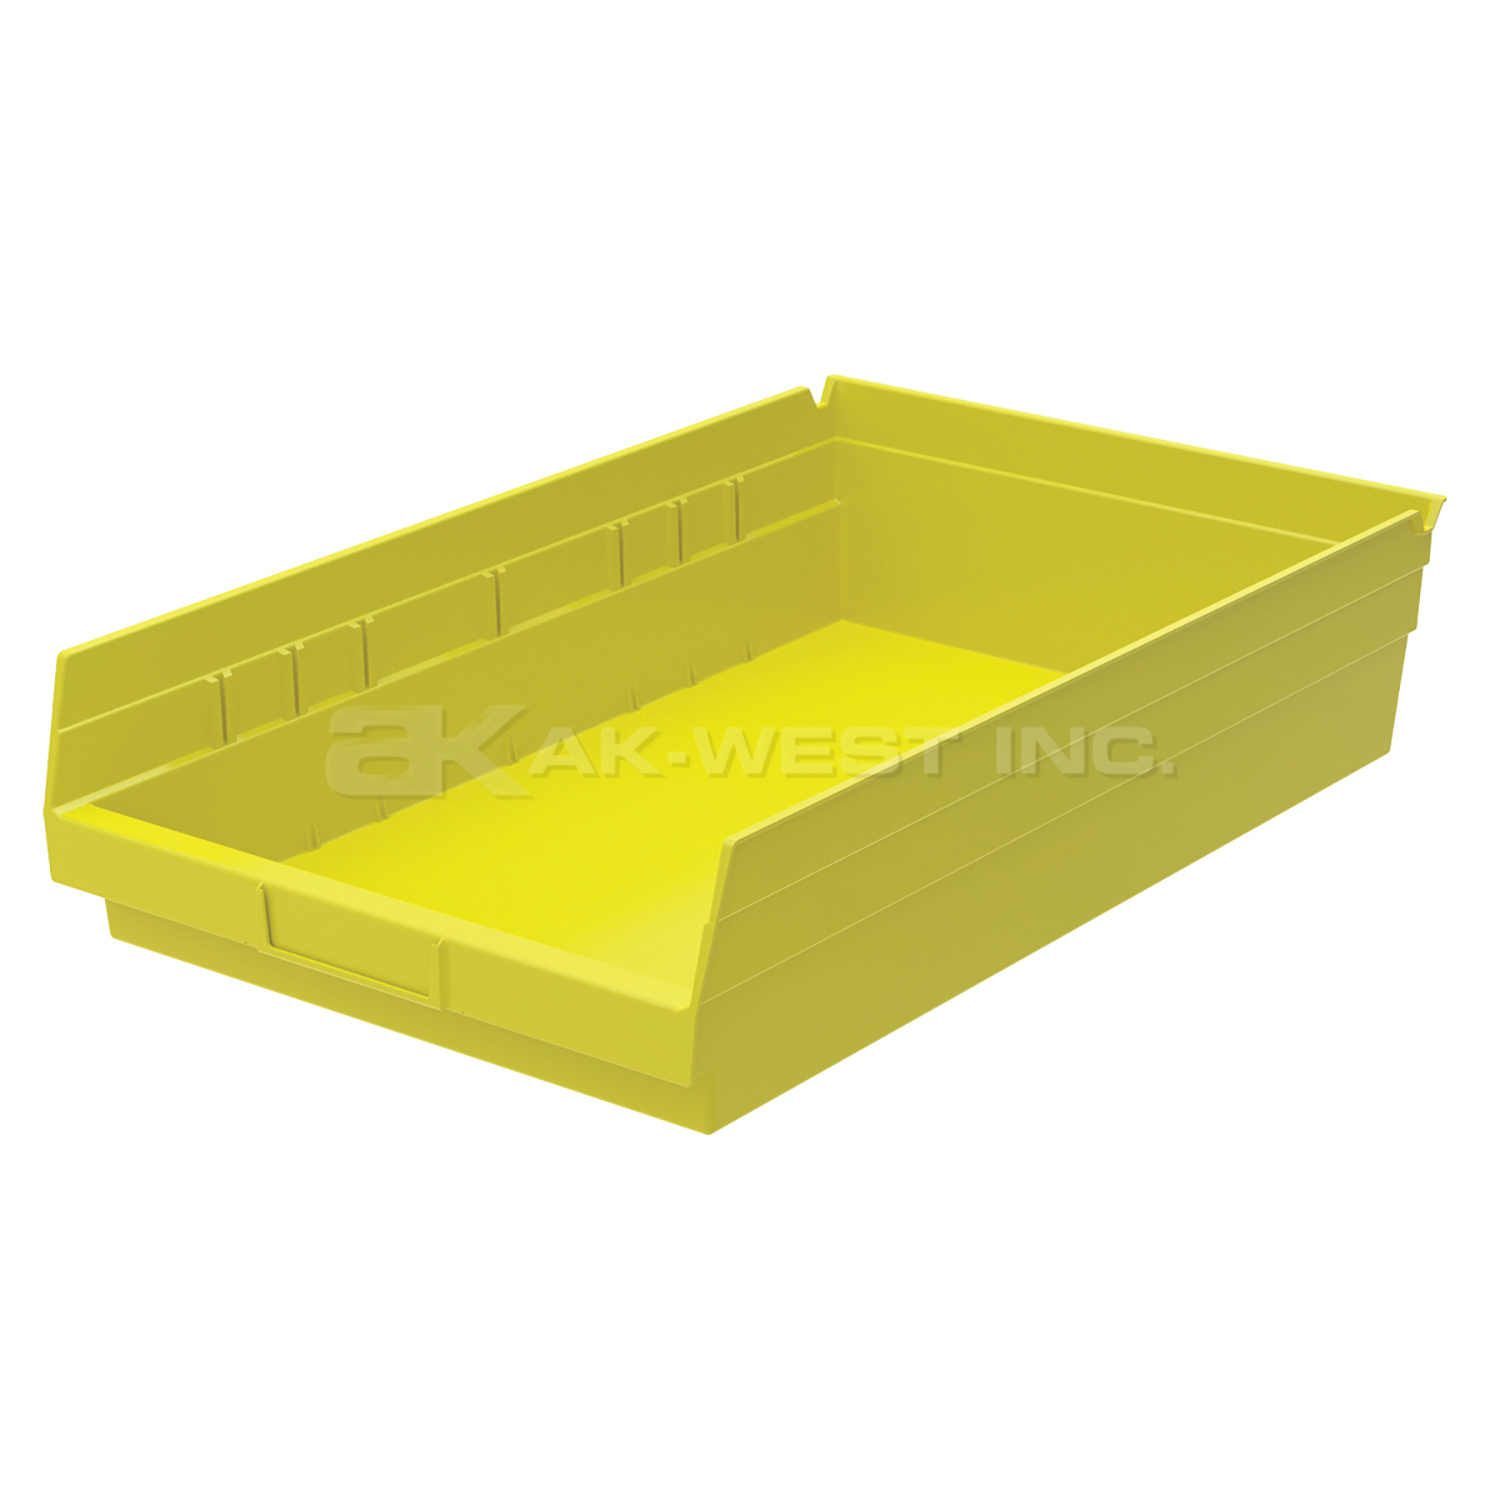 Yellow, 17-7/8" x 11-1/8" x 4" Shelf Bin (12 Per Carton)